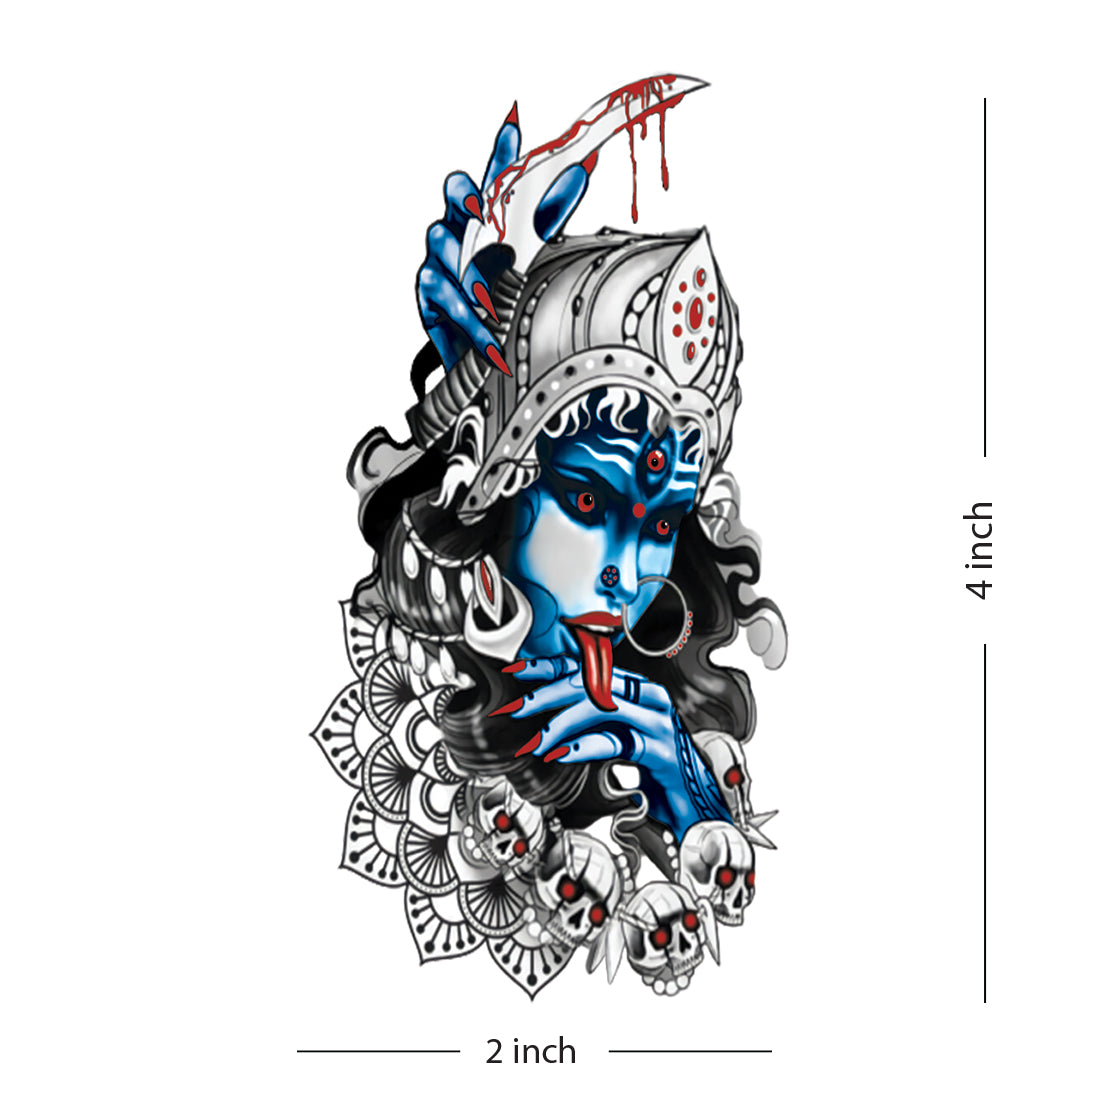 Durga (Mahishasura-Mardini) by r3m1stikn on DeviantArt